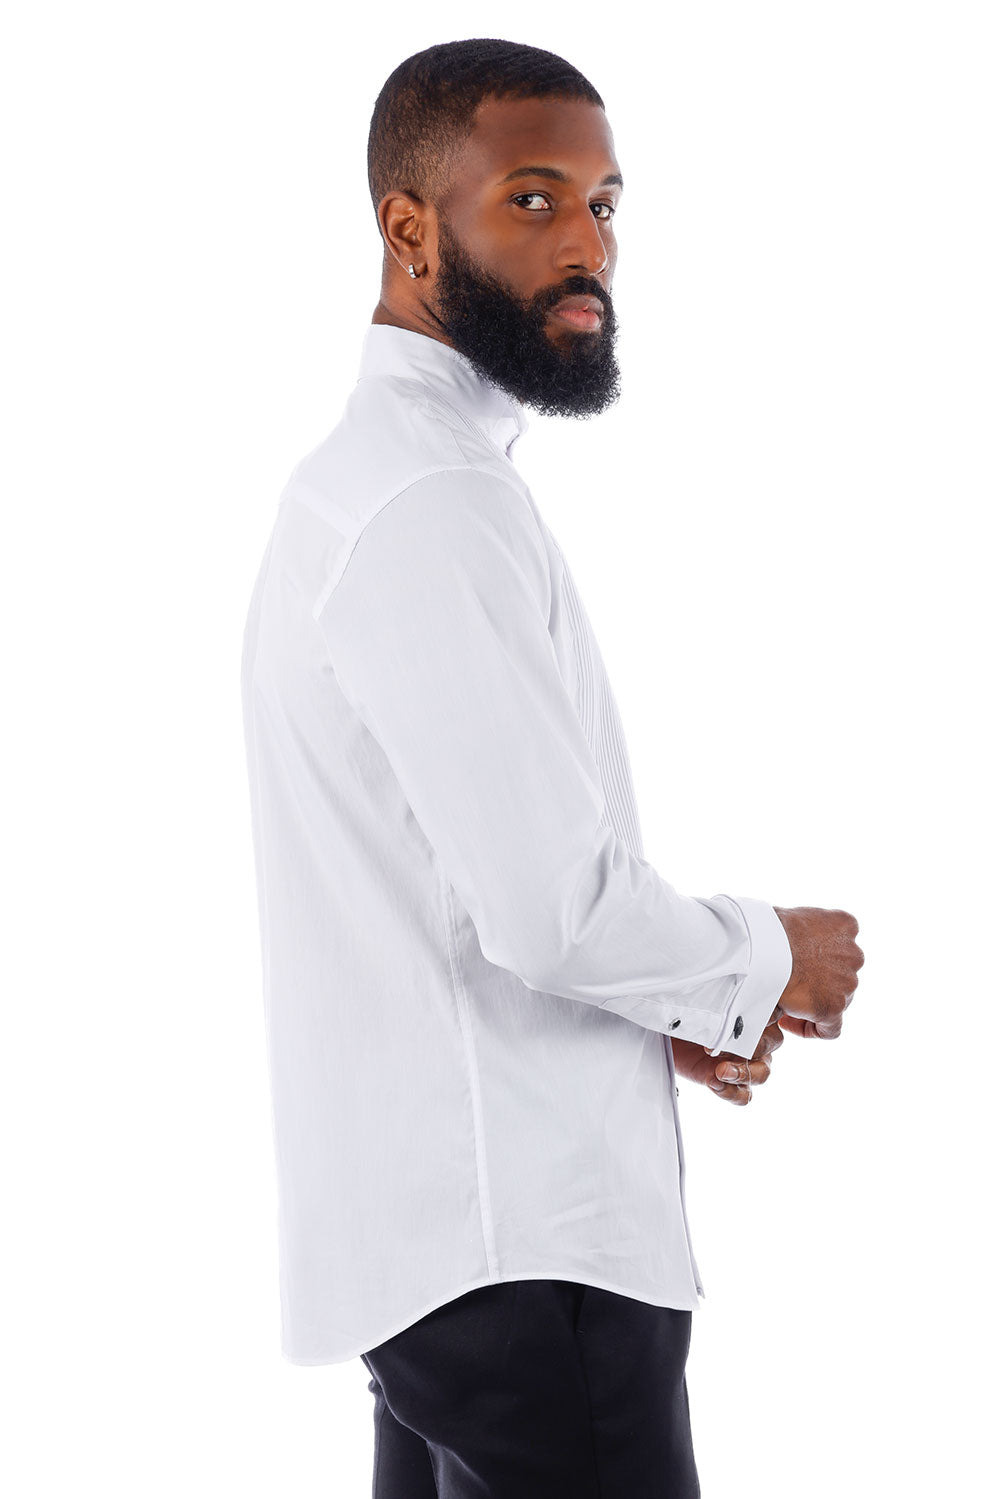 BARABAS Men's Tuxedo Wing Collar French Cuffs Long Sleeve Shirt 4txs02 White